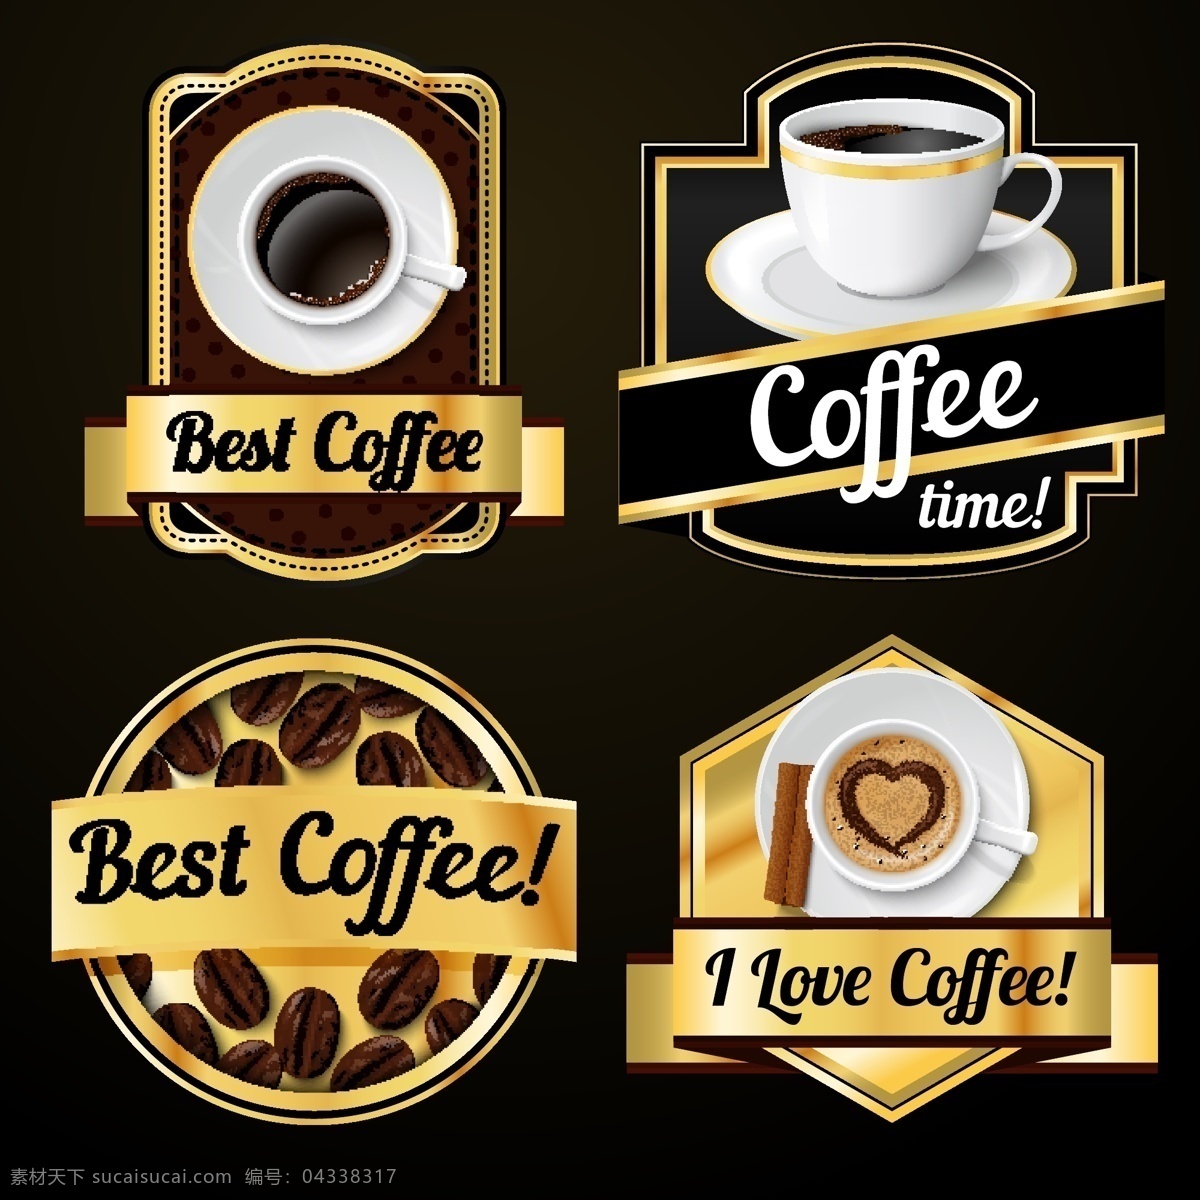 各类 美味 咖啡 宣传 图 模板下载 小资 享受 可口 卡布奇洛 黑咖啡 咖啡时间 标志图标 矢量素材 黑色